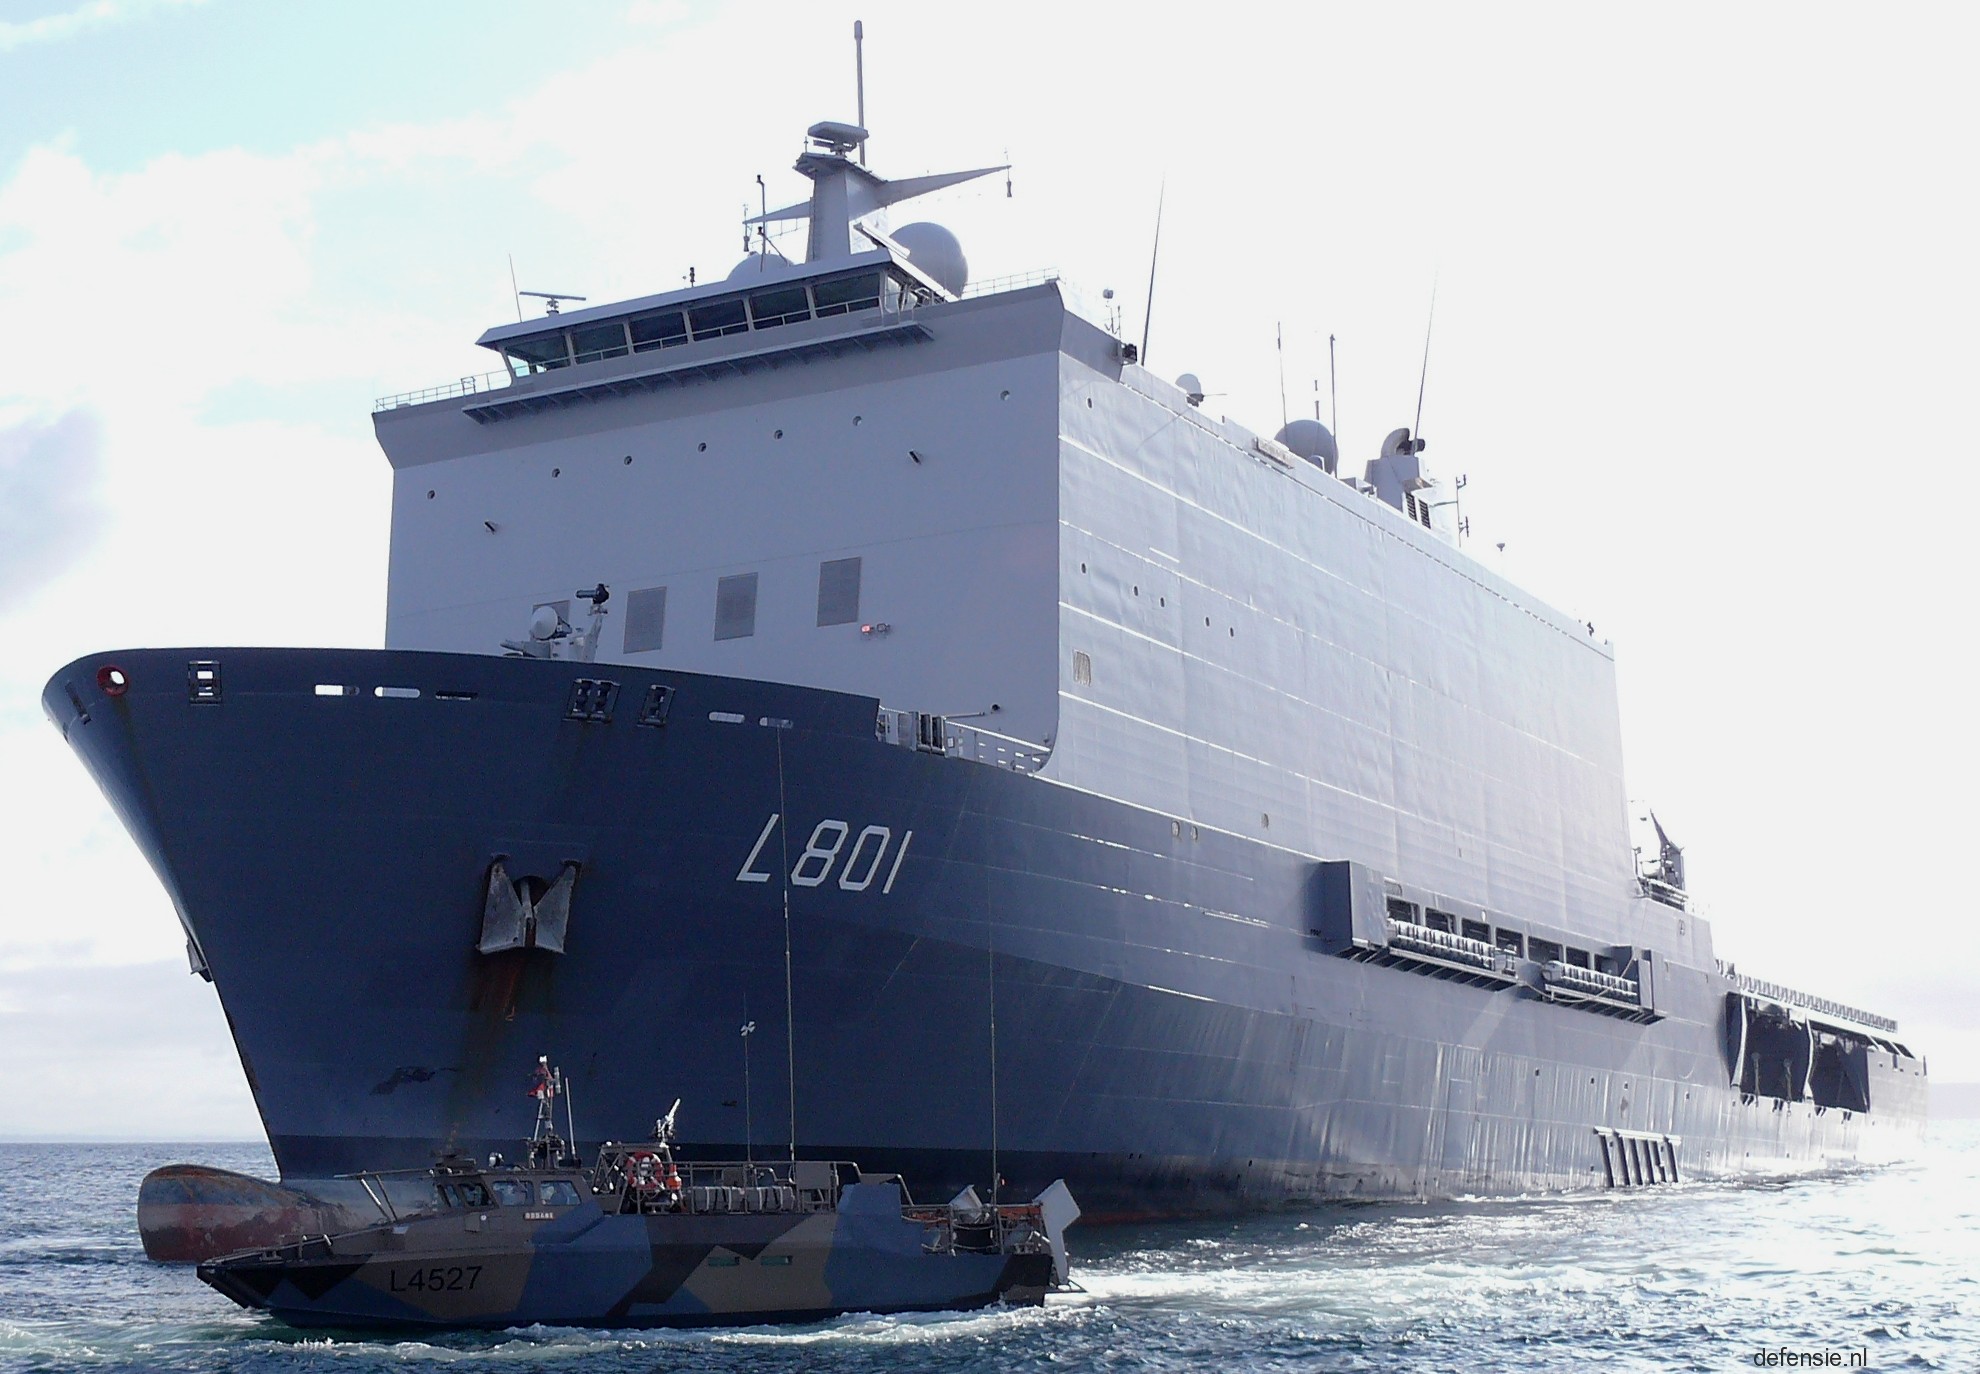 l-801 hnlms johan de witt amphibious ship landing platform dock lpd royal netherlands navy 40